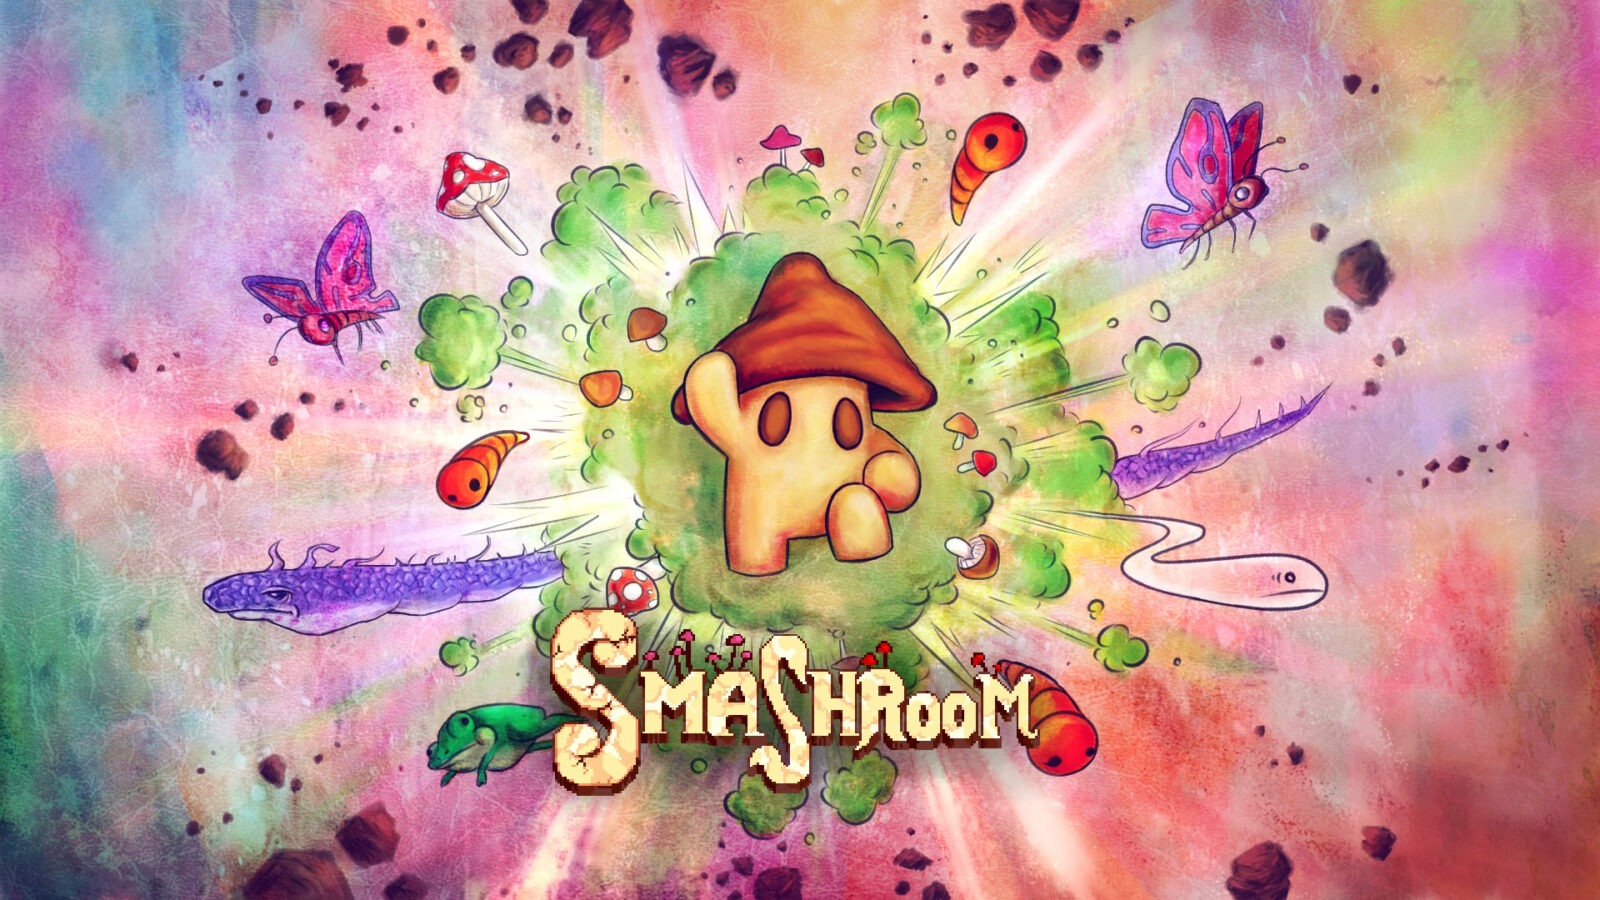 Smashroom - Muito room para pouco smash